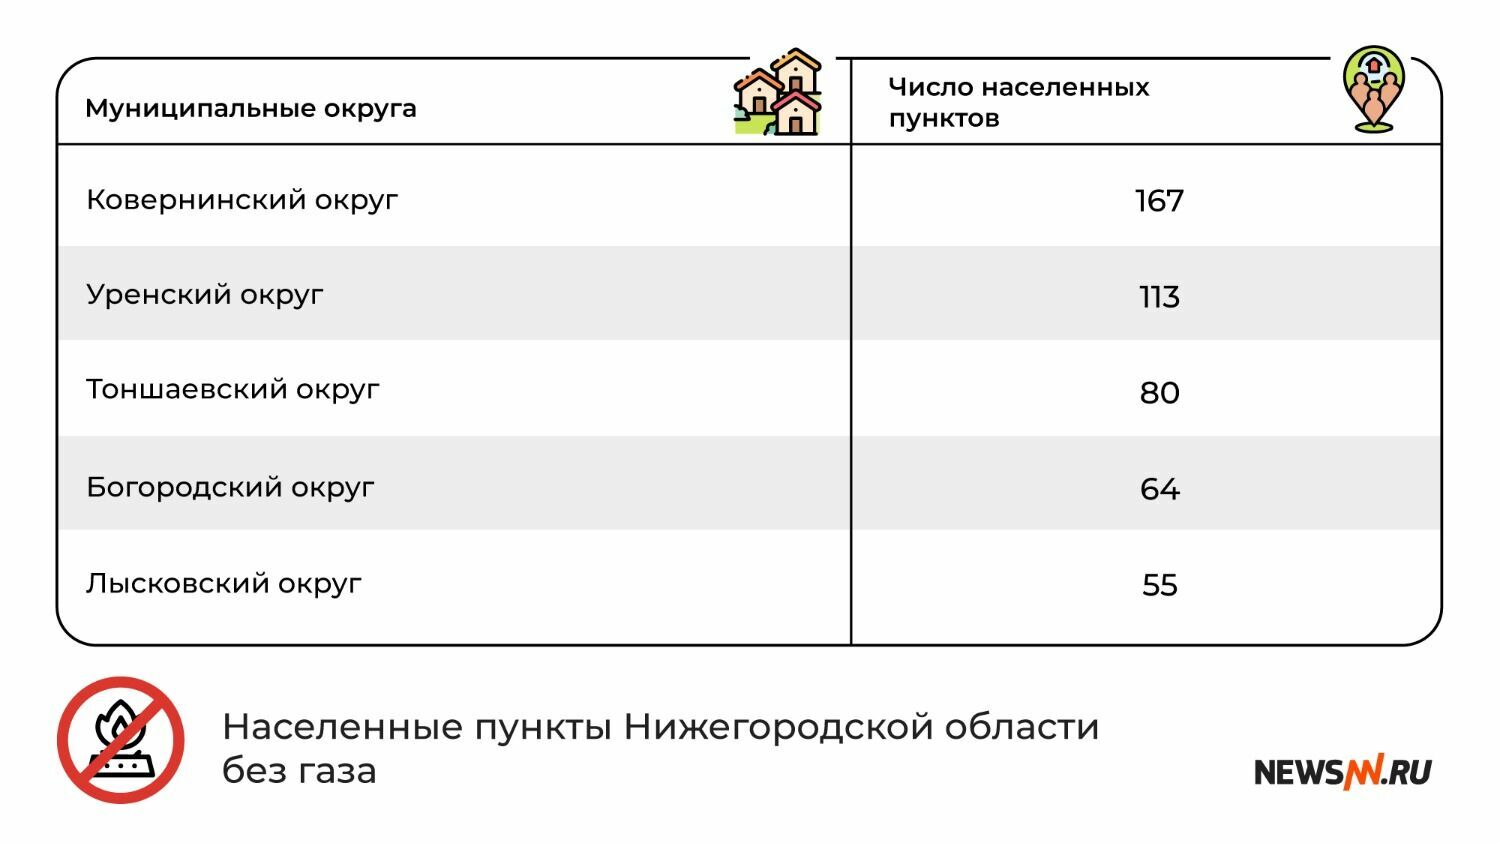 Муниципальные округа Нижегородской области без газа